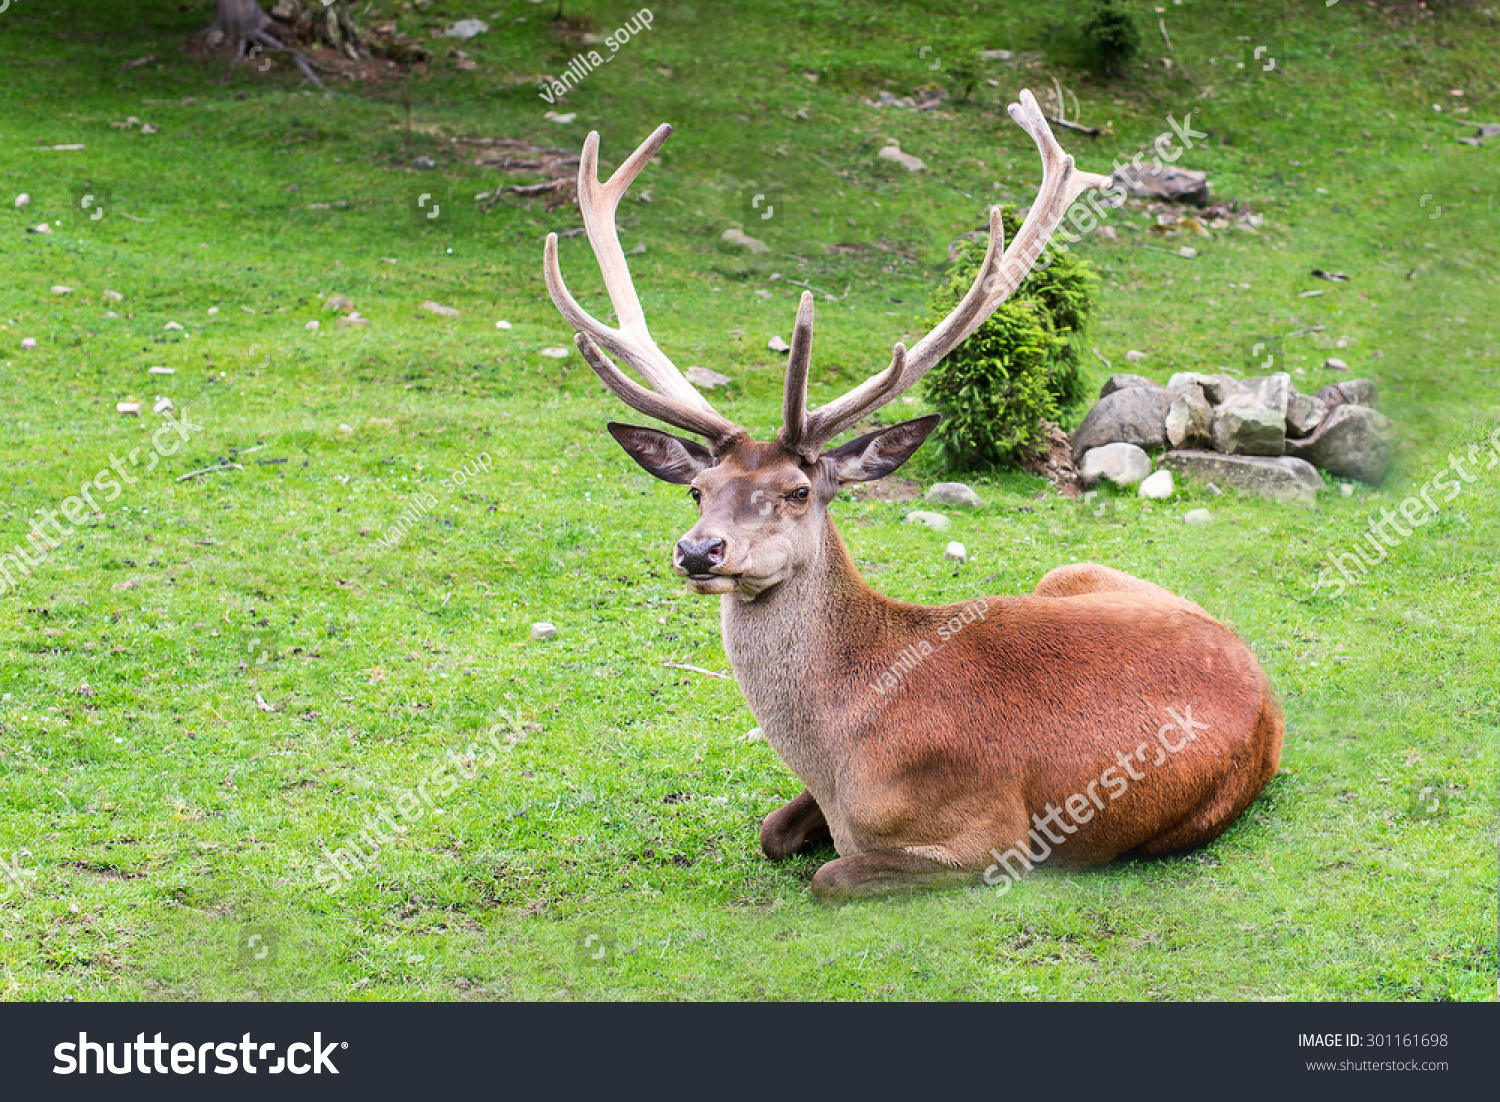 female deer with antlers